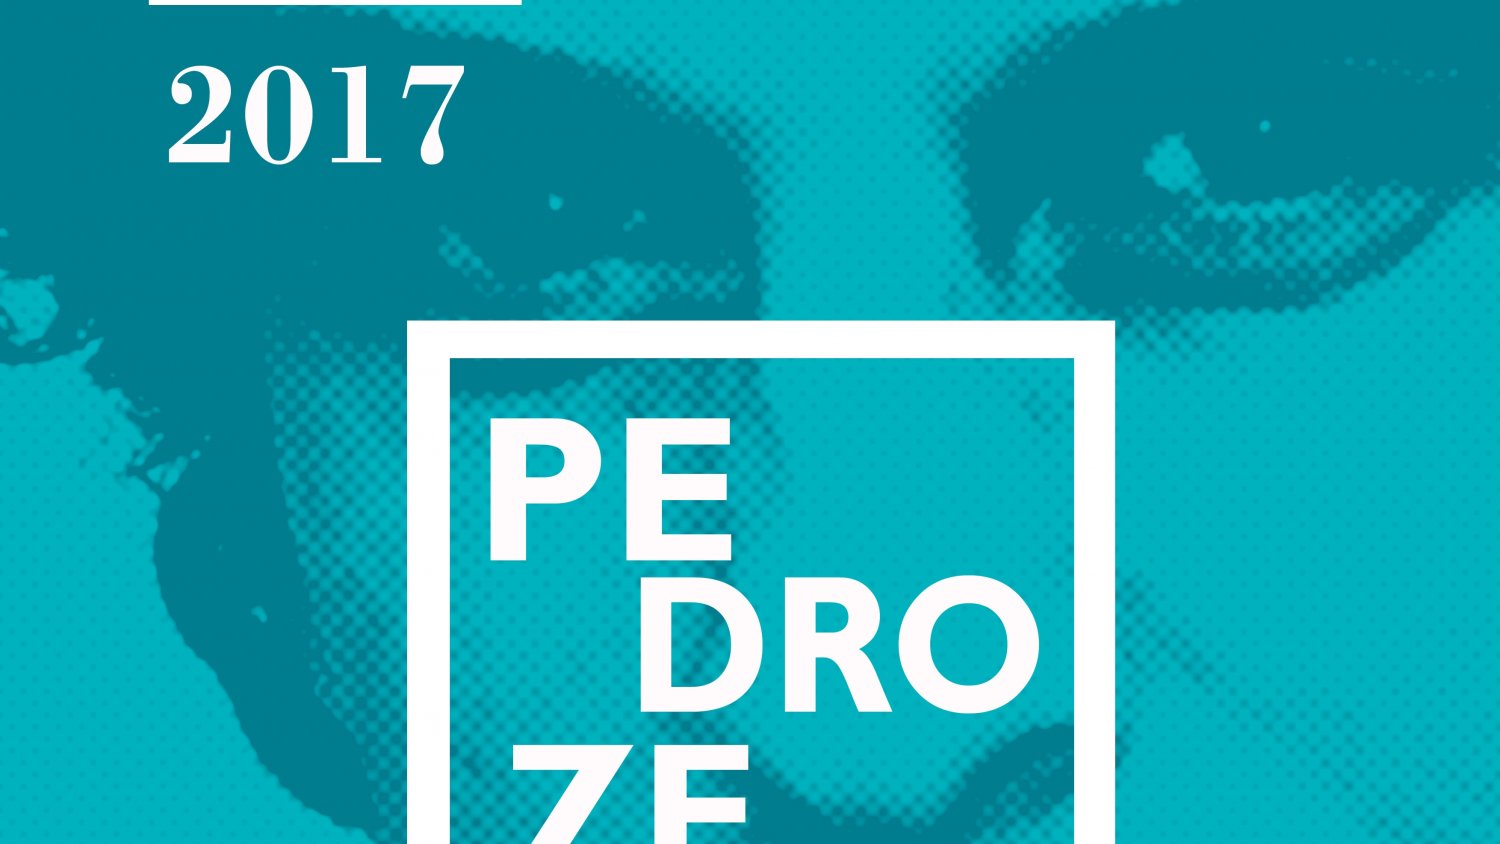 El plazo de presentación de trabajos para los II Premios Pedro Zerolo de Periodismofinaliza el 25 de agosto